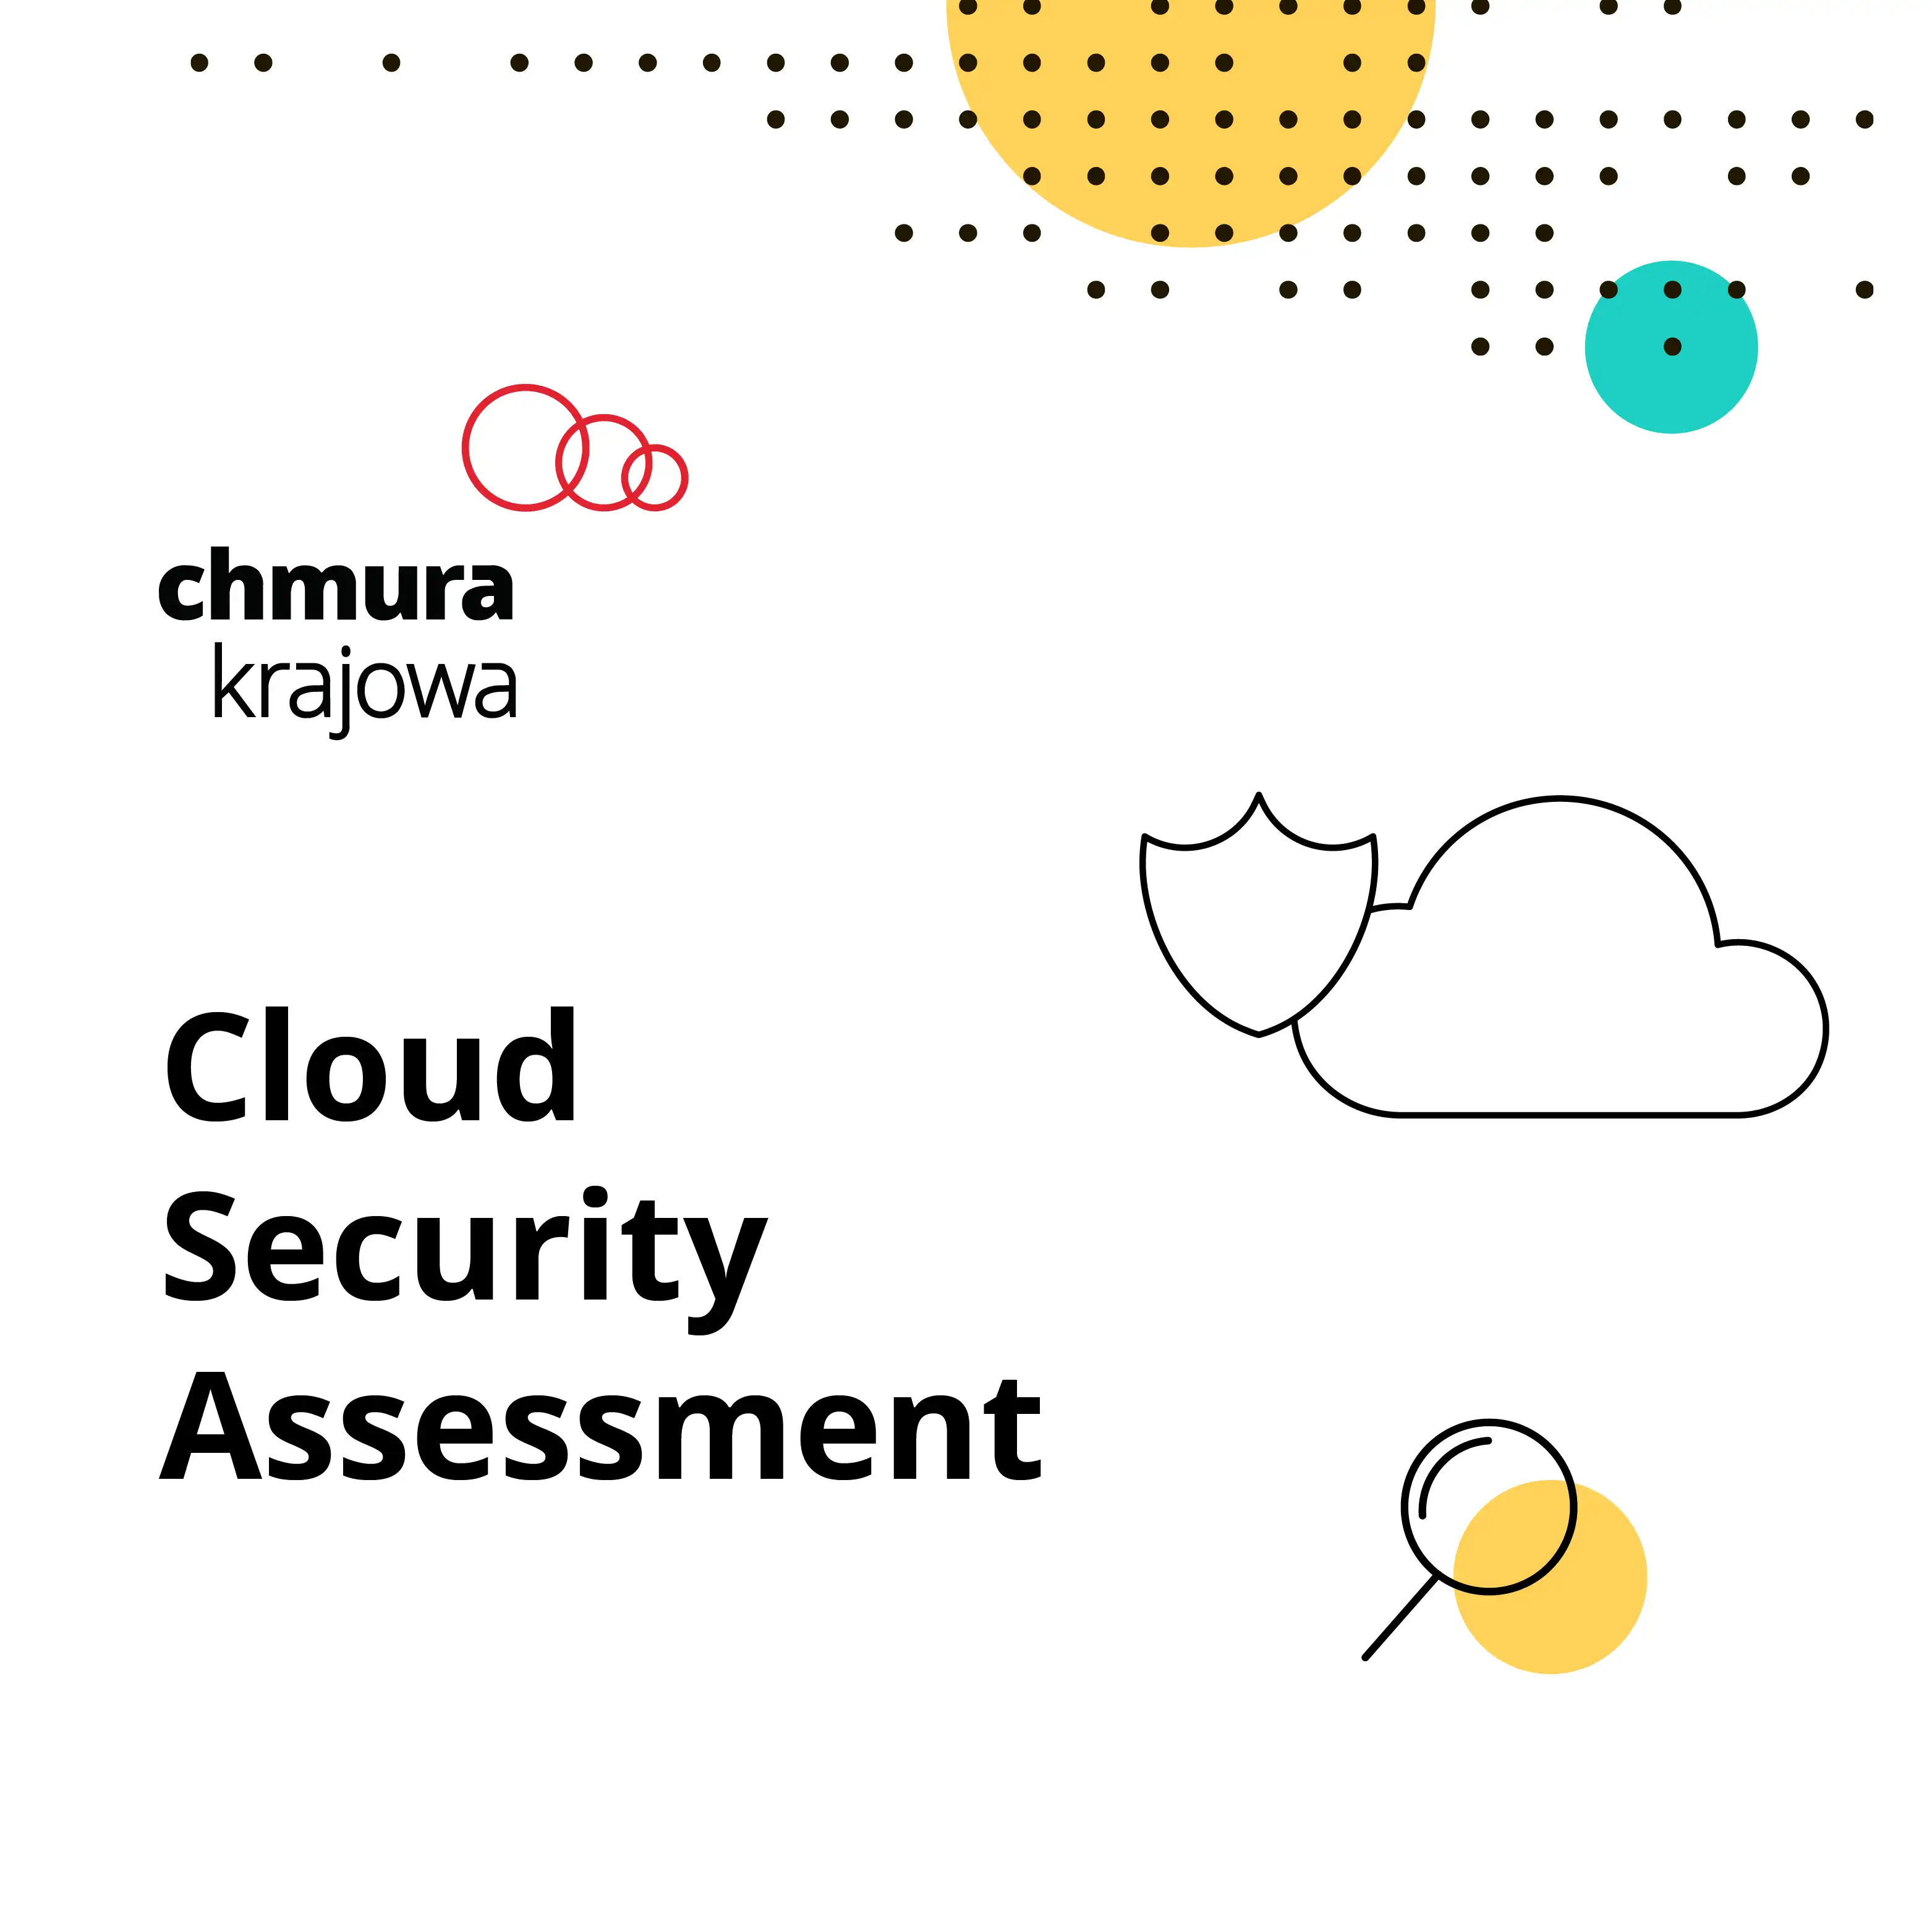 Cloud Security Assessment - pierwszy krok do bezpieczeństwa w chmurze